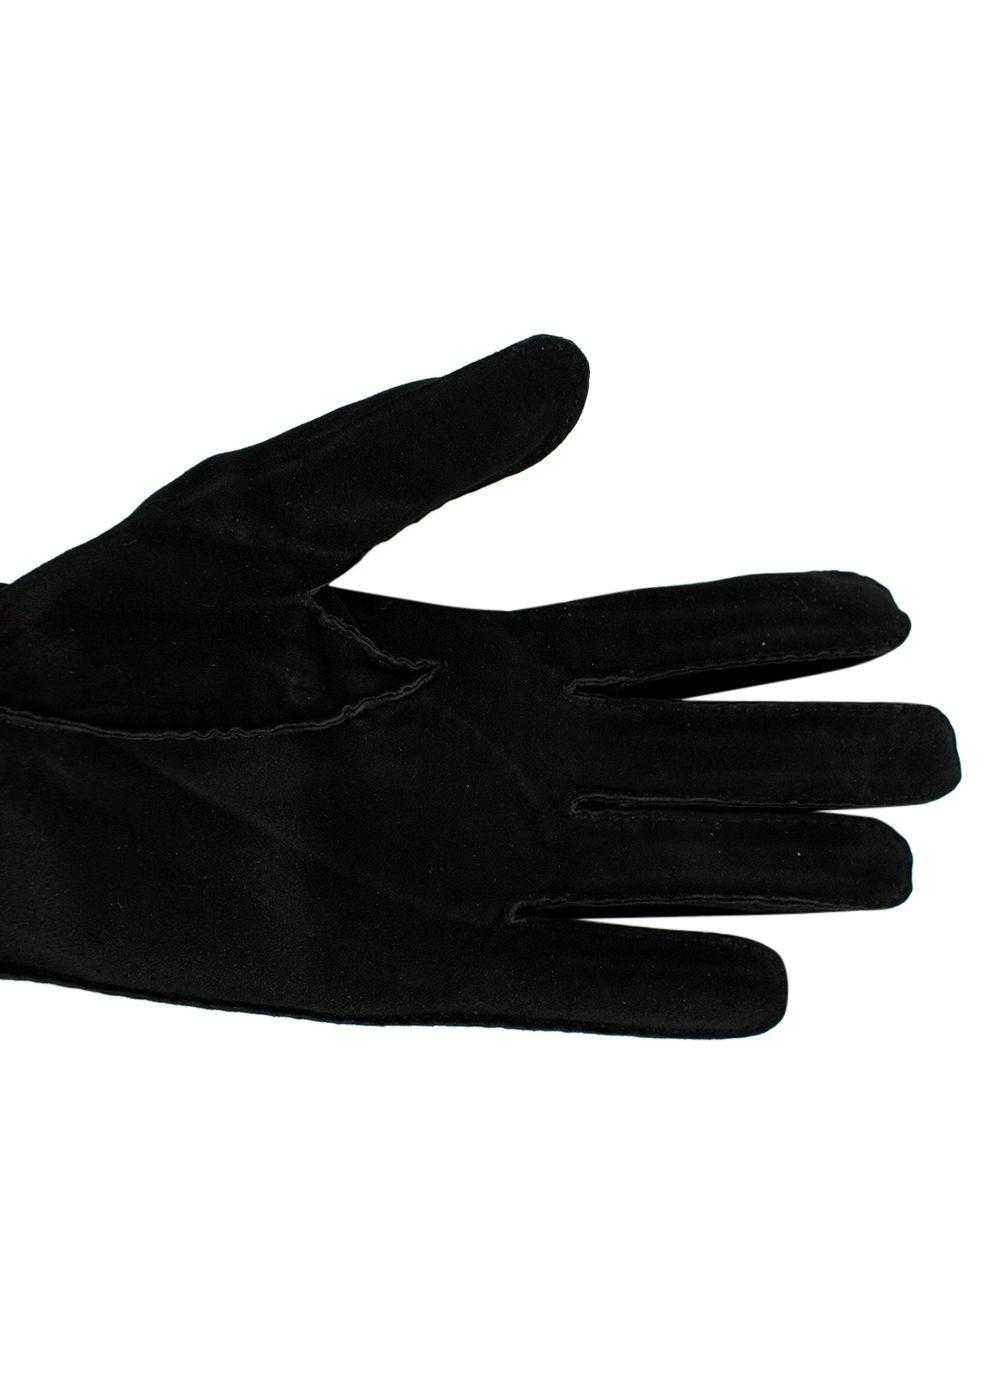 Managed by hewi Hermes Vintage Black Suede Gloves - image 6